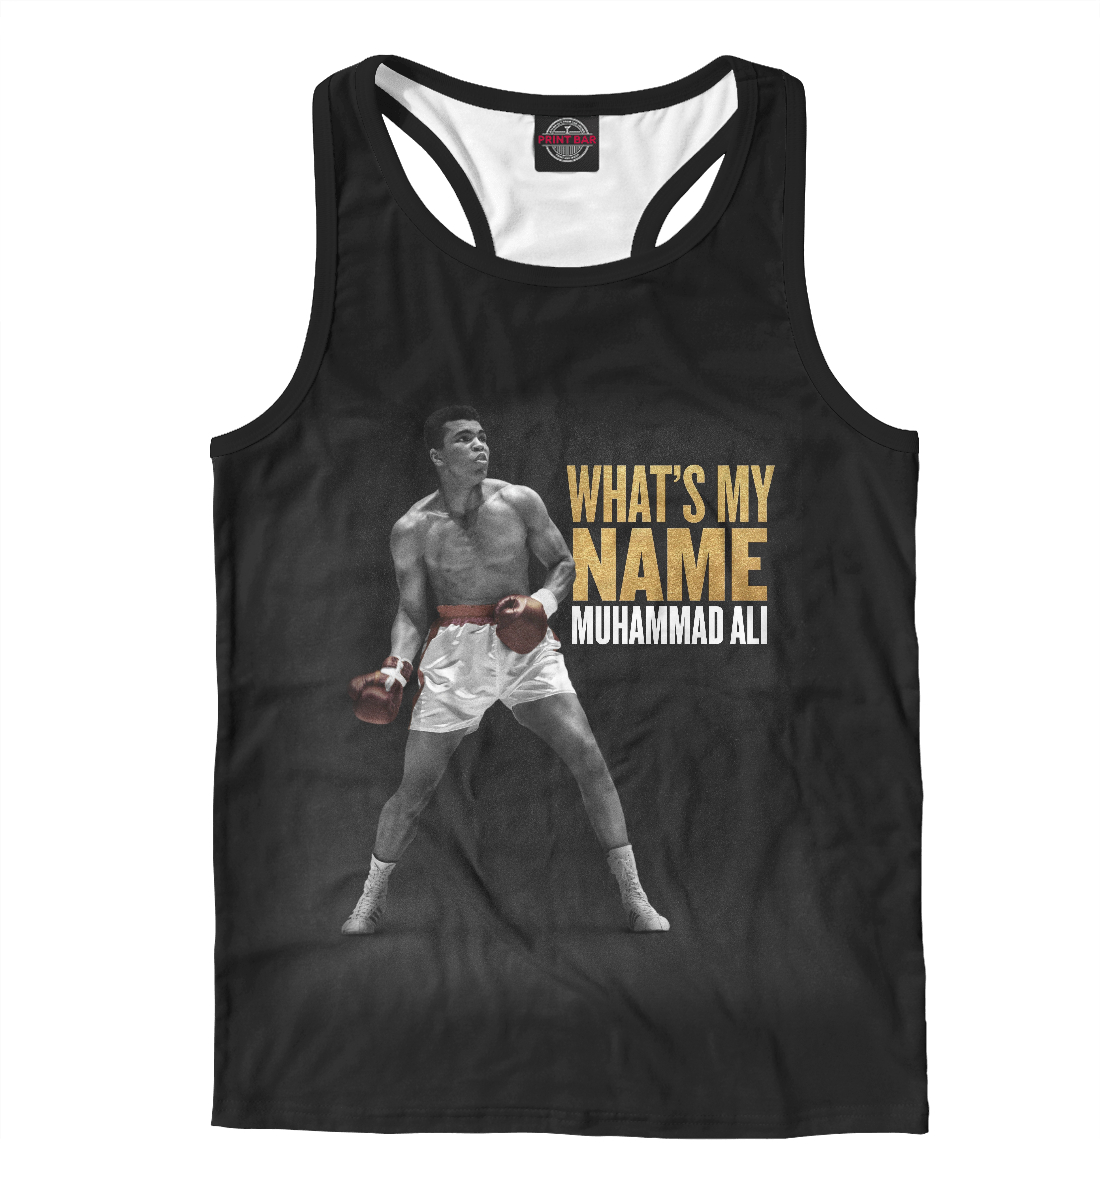 

Muhammad Ali